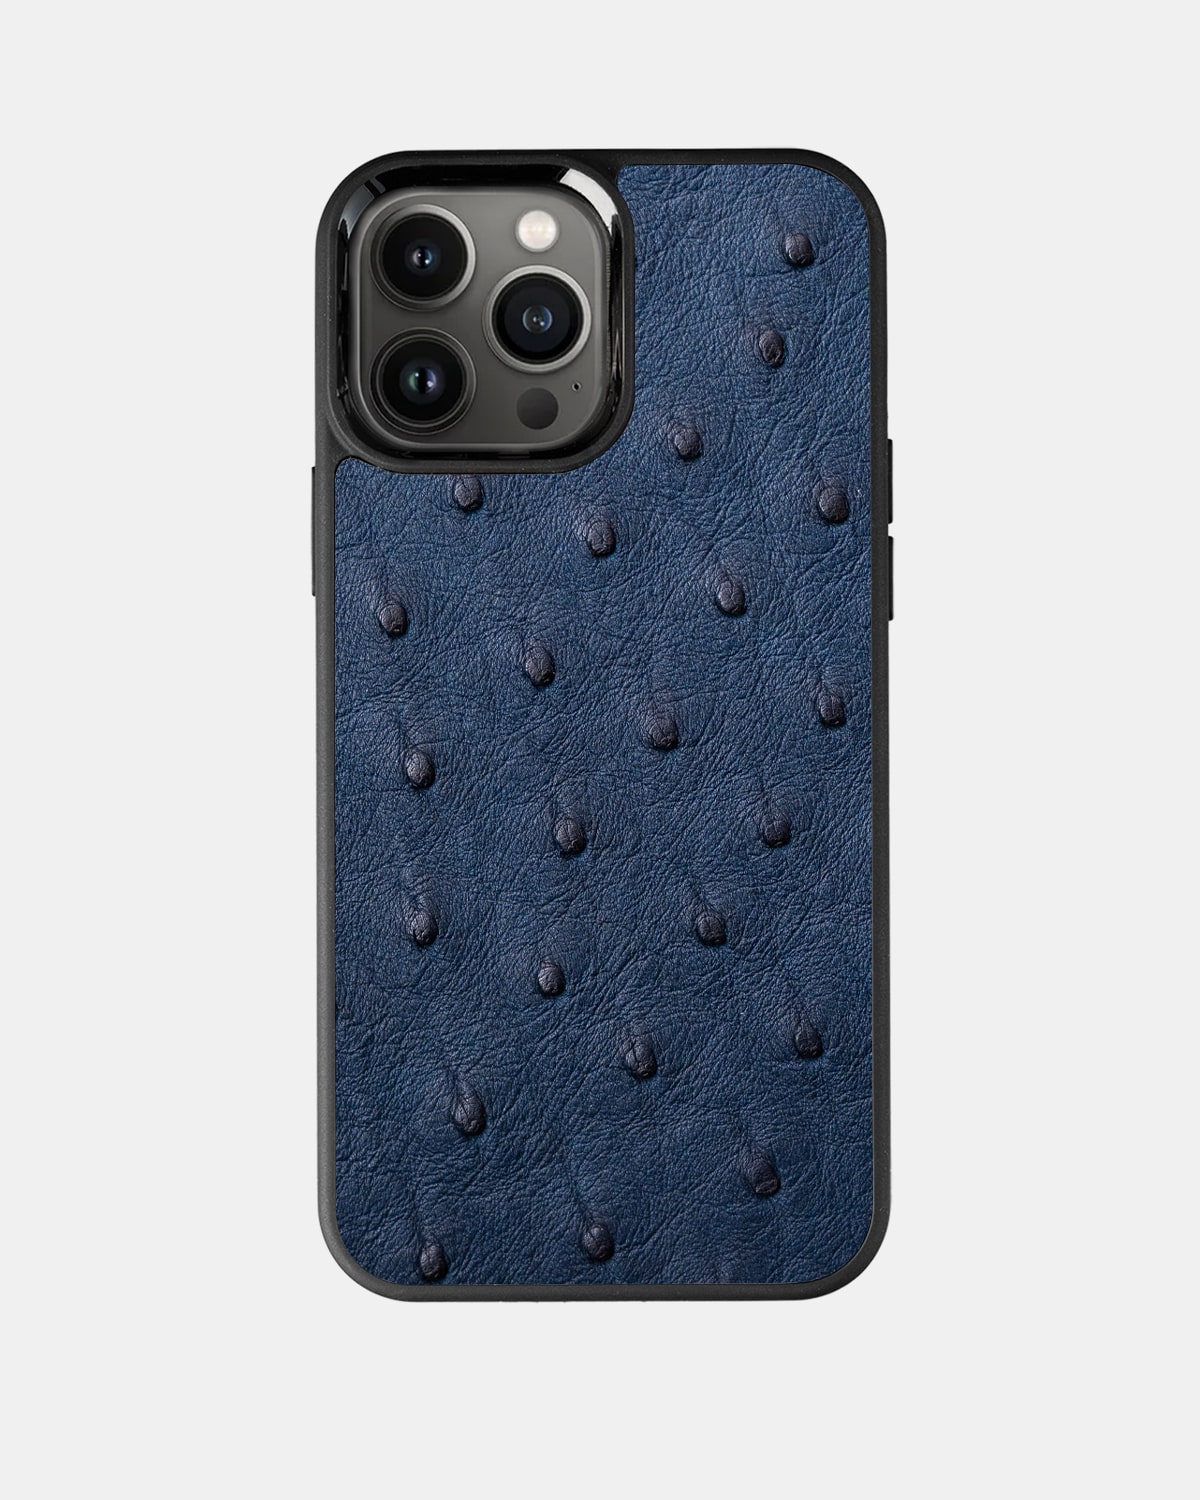 Leather iPhone case / cover - iPhone 13 ( Pro / Max / Mini ) - Ostrich skin